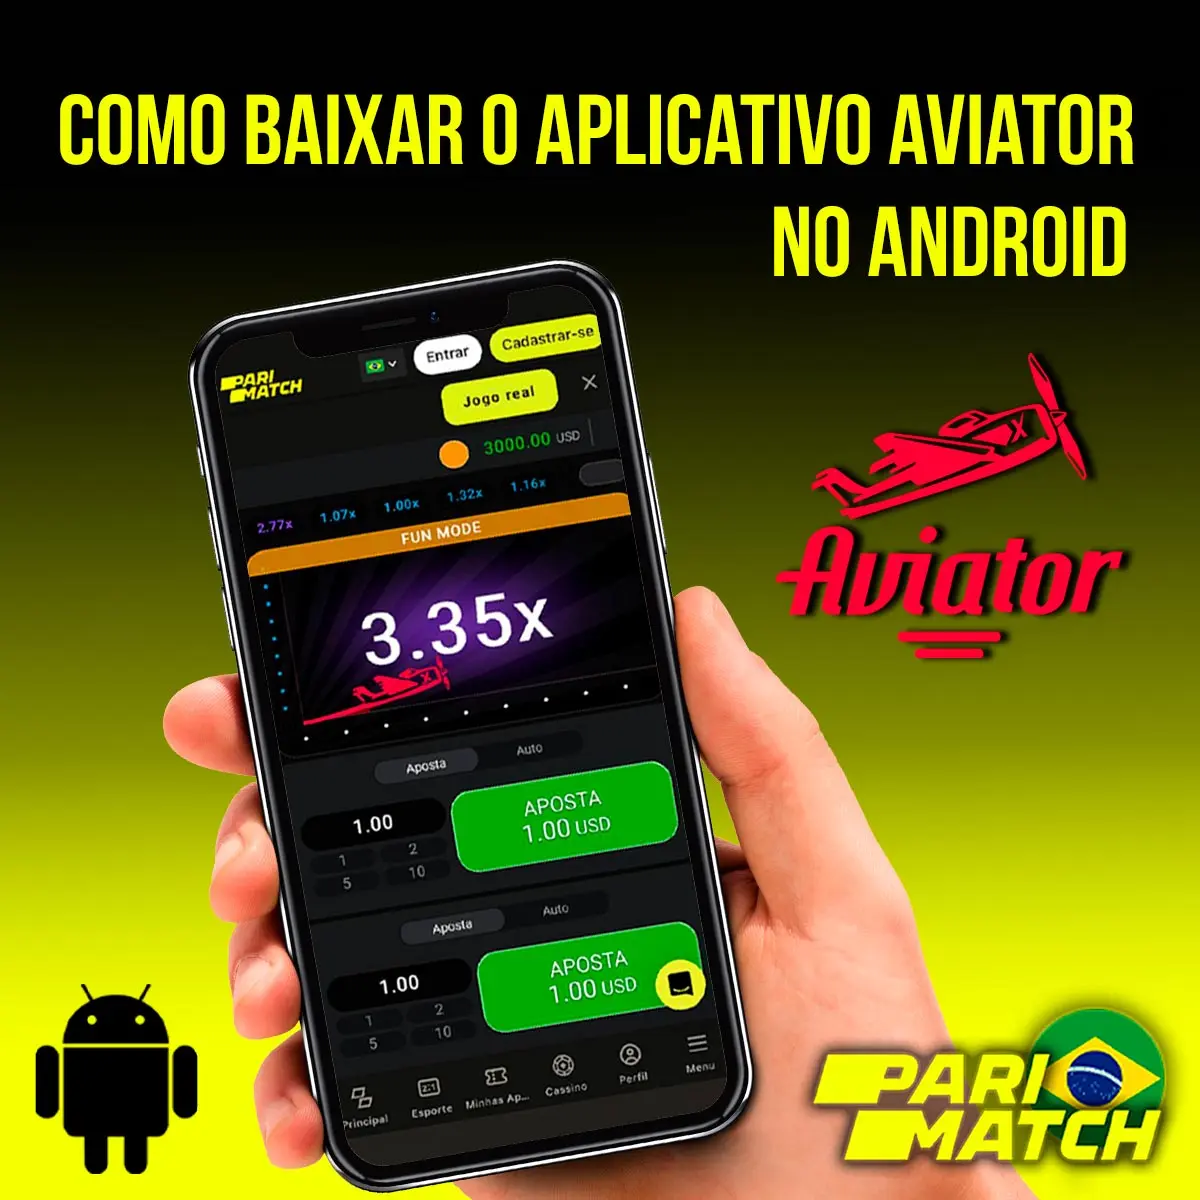 Aplicativo móvel Aviator para Android da casa de apostas Parimatch no Brasil